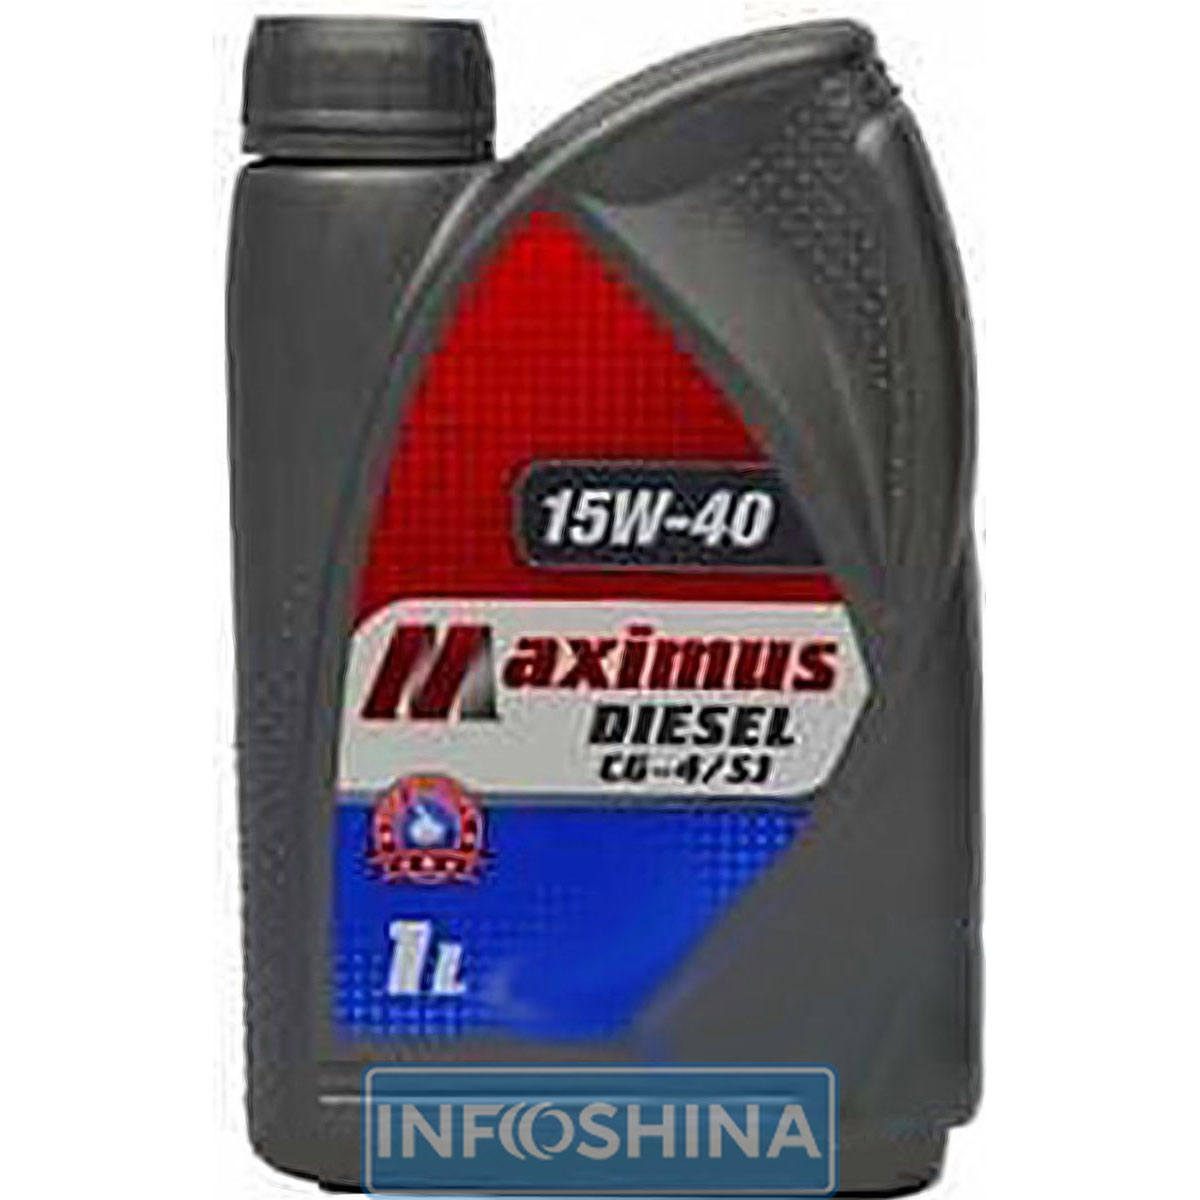 Купить масло Maximus Diesel CG-4/SJ 15W-40 (1л)